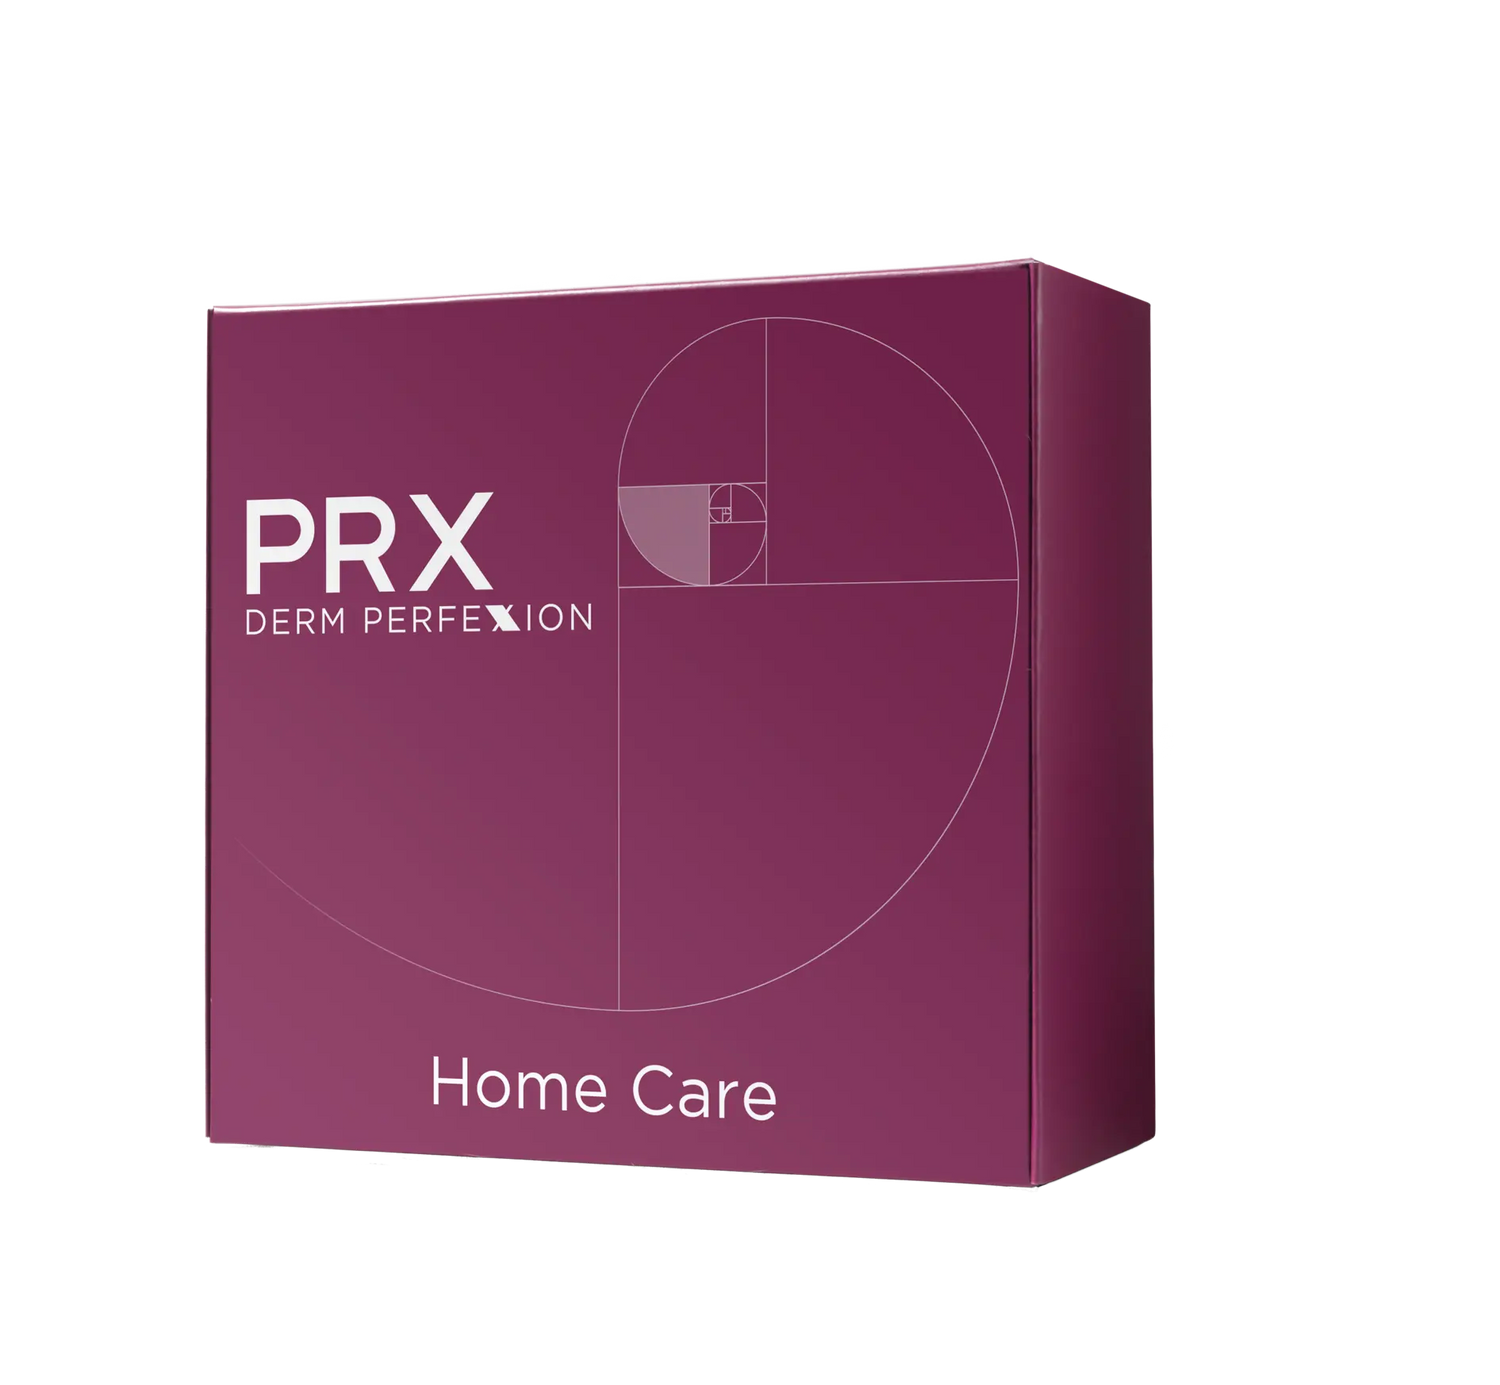 PRX Derm Perfexion Patient Home Care Box